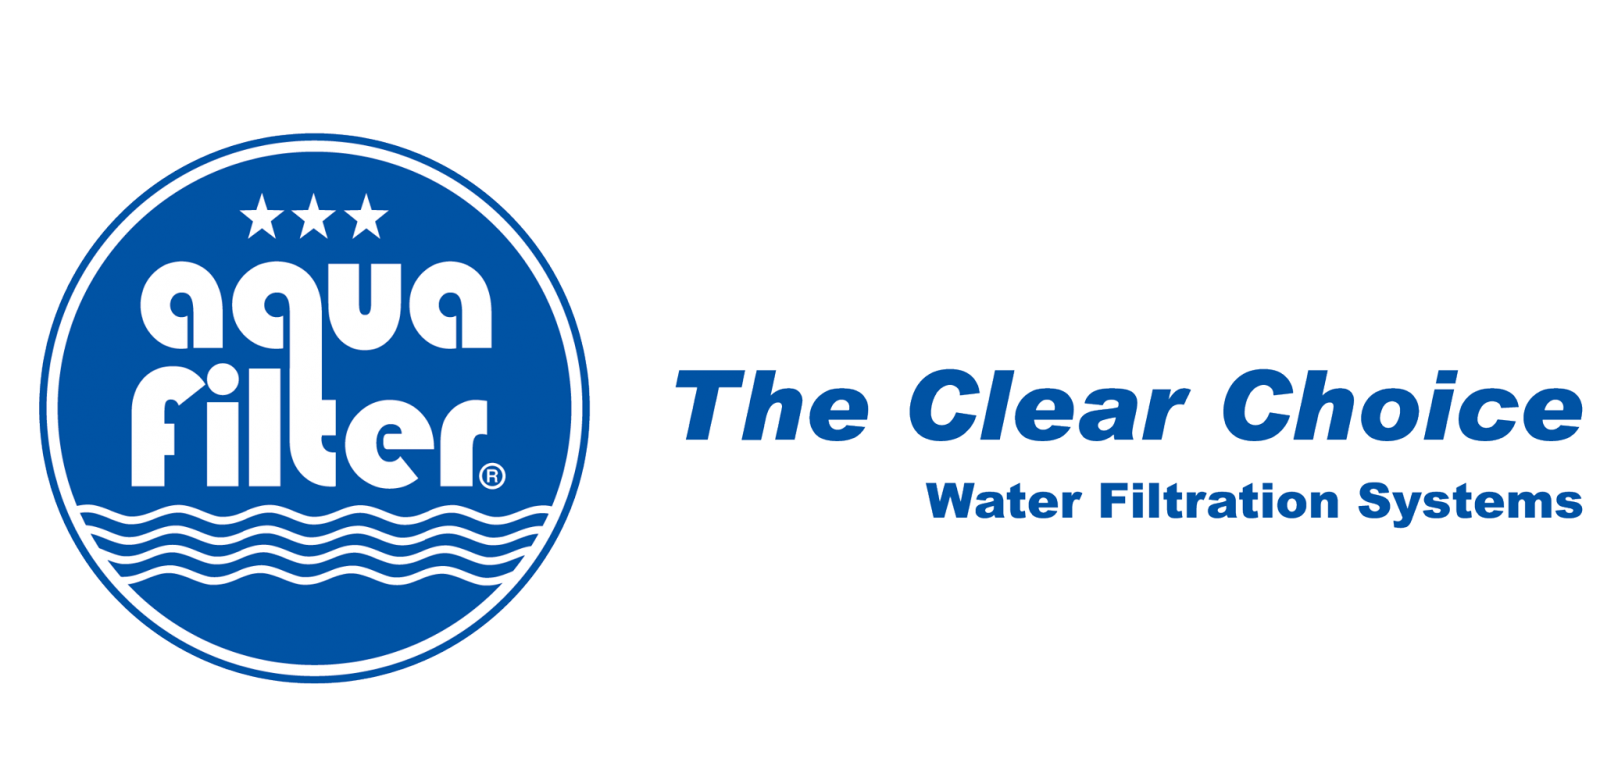 Aquafilter là thương hiệu máy lọc nước nổi tiếng xuất xứ Ba Lan